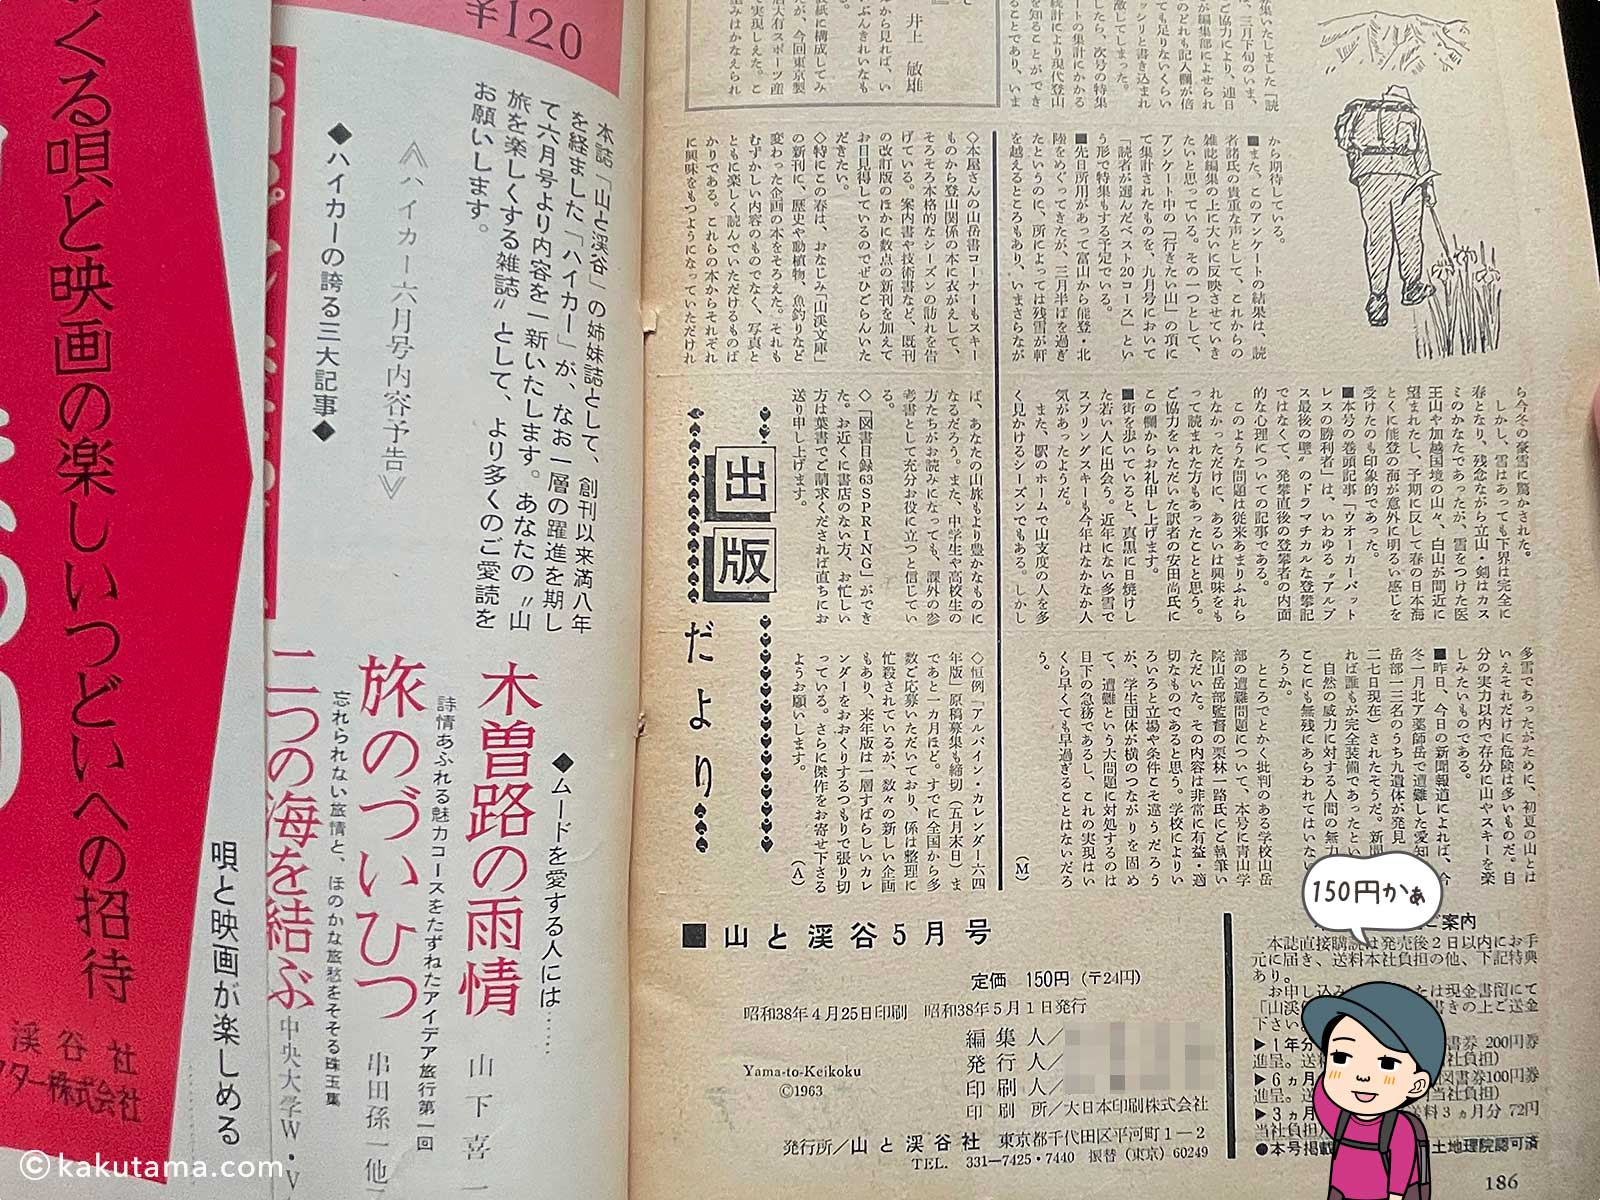 昭和時代の登山雑誌の価格の写真と登山者のイラスト